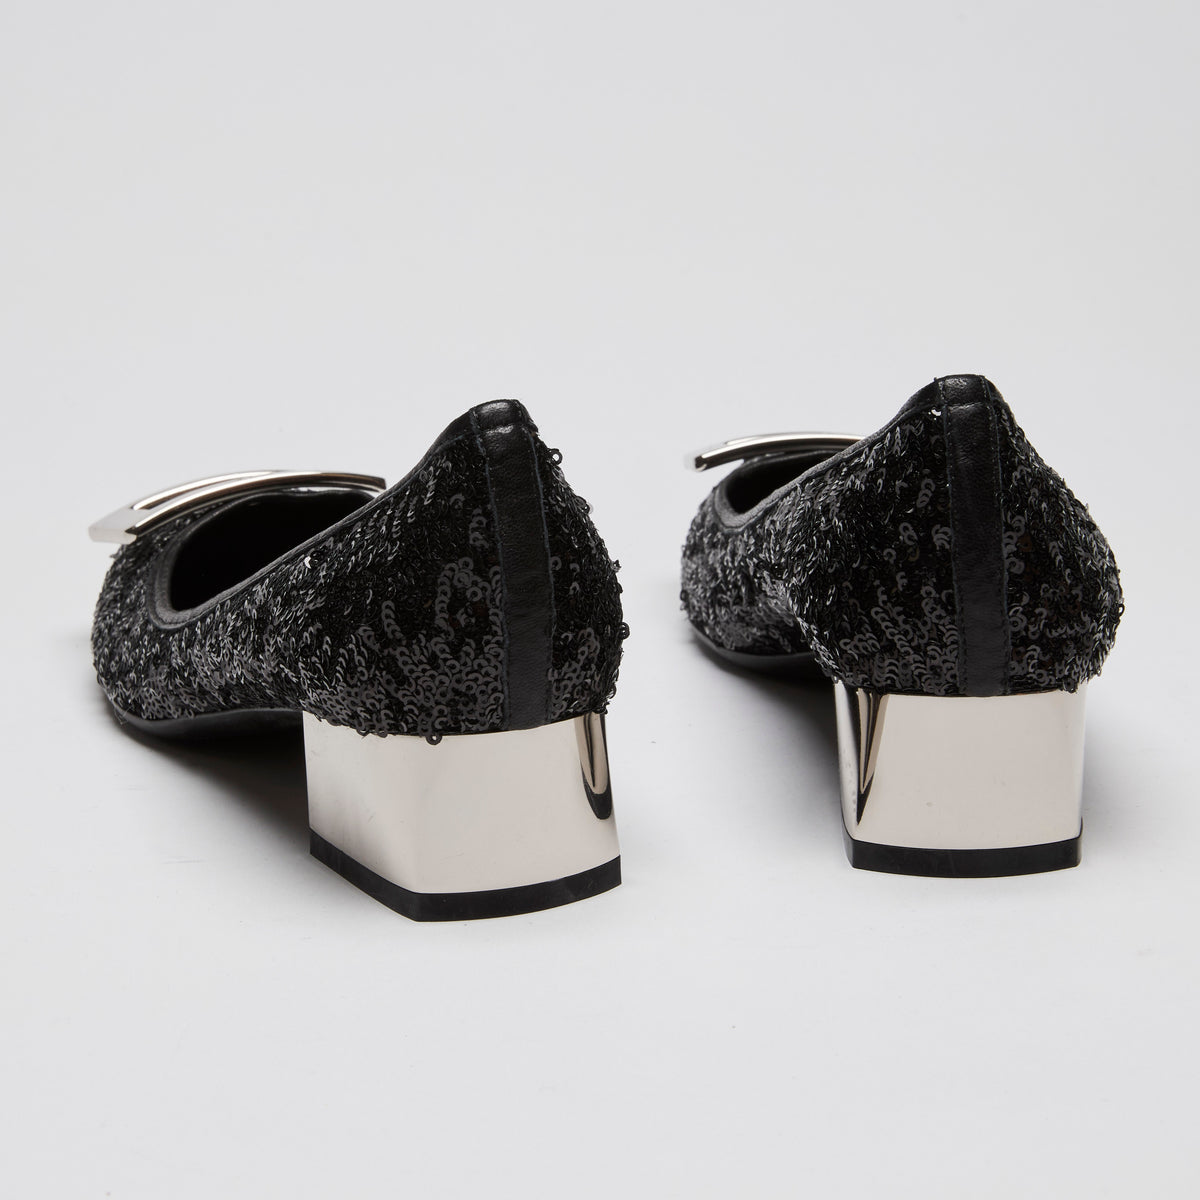 Roger Vivier Black Sequin Kitten Block Heels with Silver Buckle Size 38.5